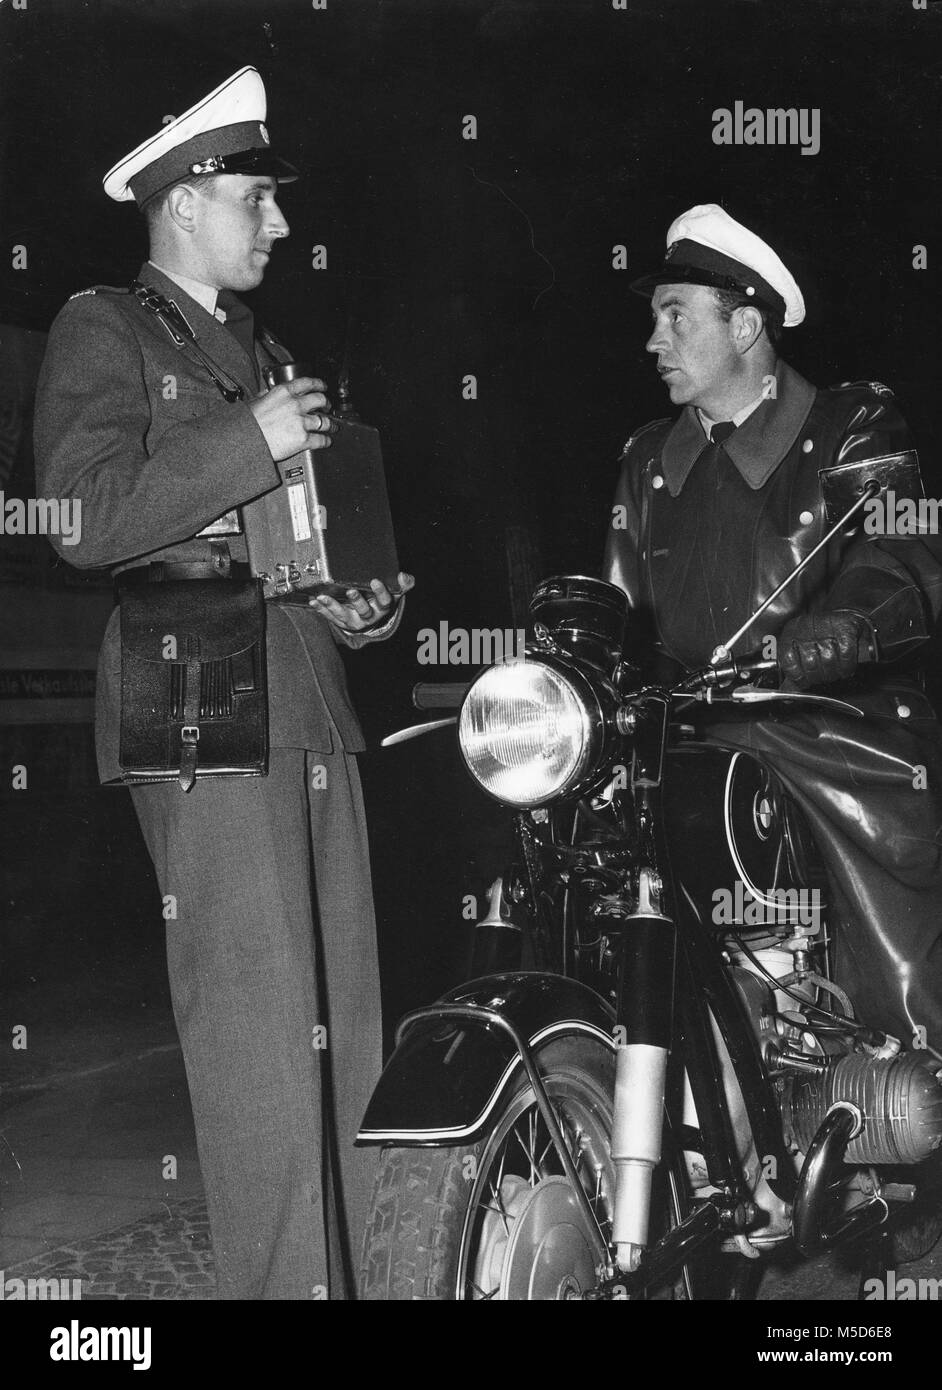 Polizisten auf dem Motorrad im Gespräch mit einem Kollegen, 1960er Jahre, Berlin, Deutschland Stockfoto